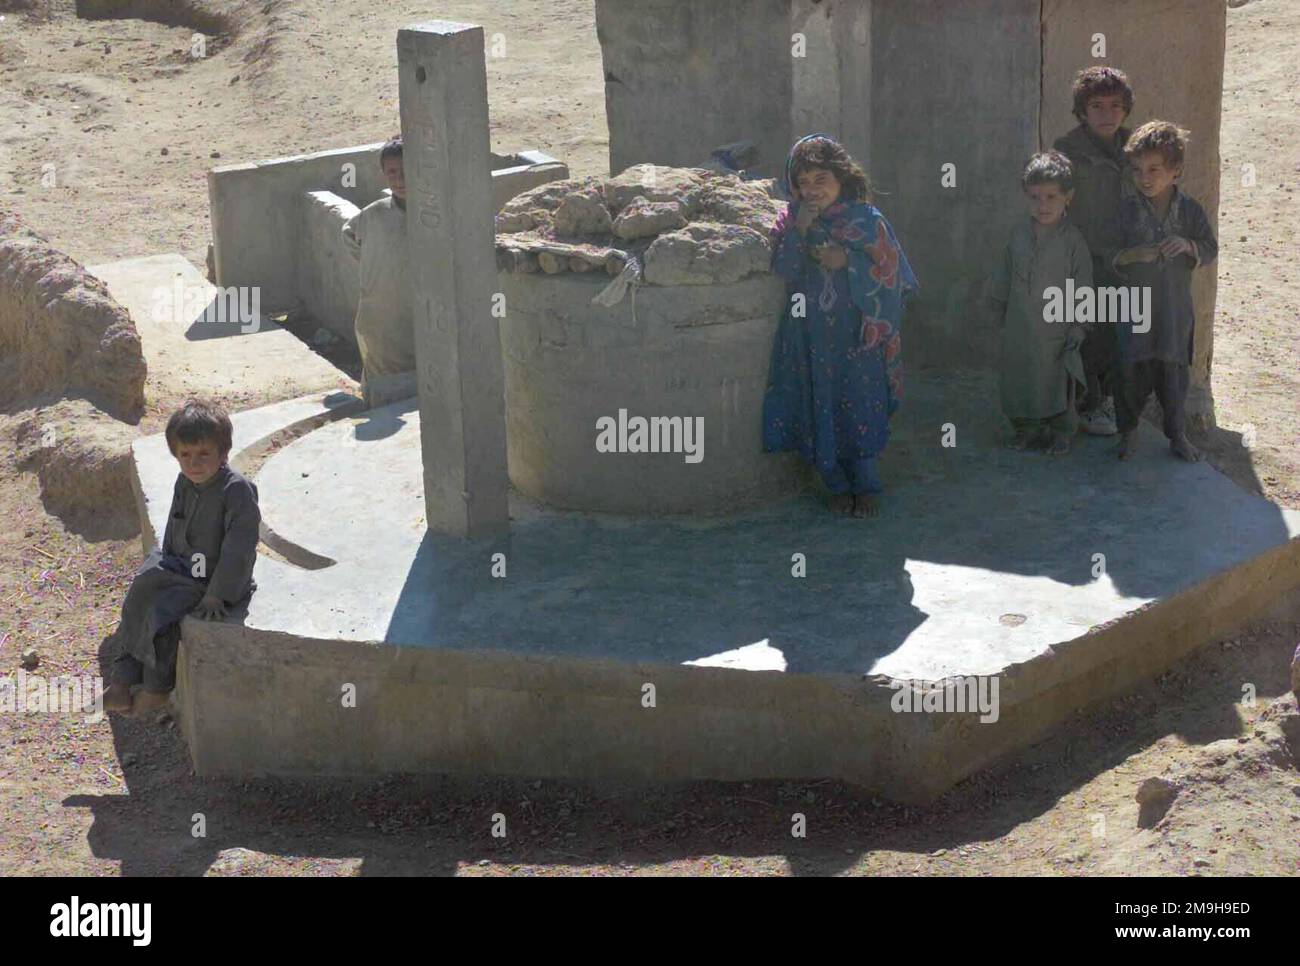 Afghanische Kinder versammeln sich im Brunnen des Dorfes, um Marines bei DER OPERATION DAUERHAFTE FREIHEIT mit leichten gepanzerten Fahrzeugen (LAV-25) durch ein Dorf in der Nähe des internationalen Flughafens Kandahar, Kandahar, Afghanistan, zu beobachten. Betreff Operation/Serie: DAUERHAFTE FREIHEITSBASIS: Internationaler Flughafen Kandahar Land: Afghanistan (AFG) Stockfoto